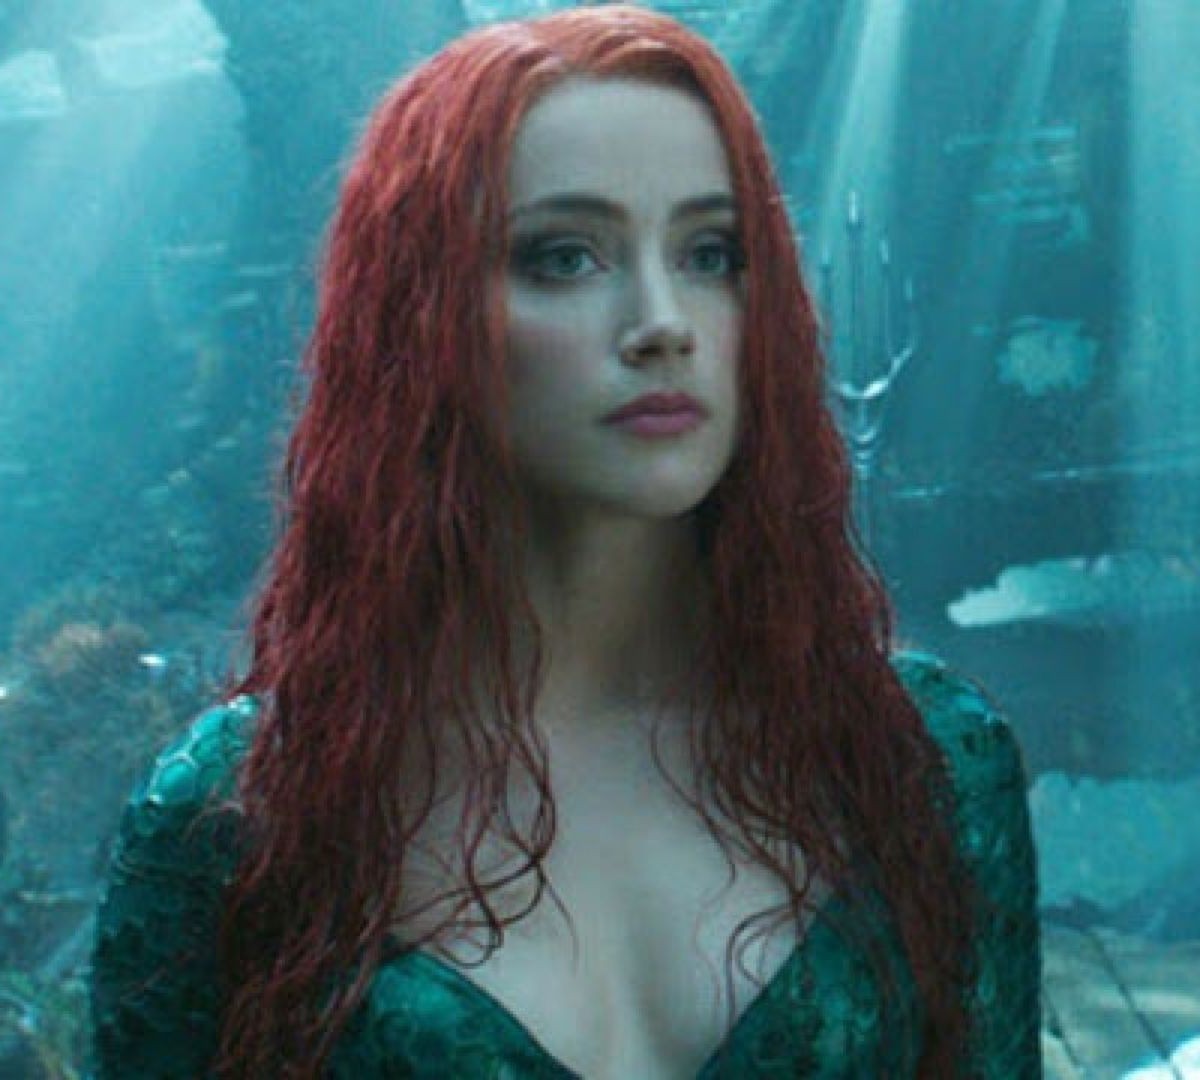 Petição para tirar atriz do filme Aquaman recebeu 3 milhões de assinaturas